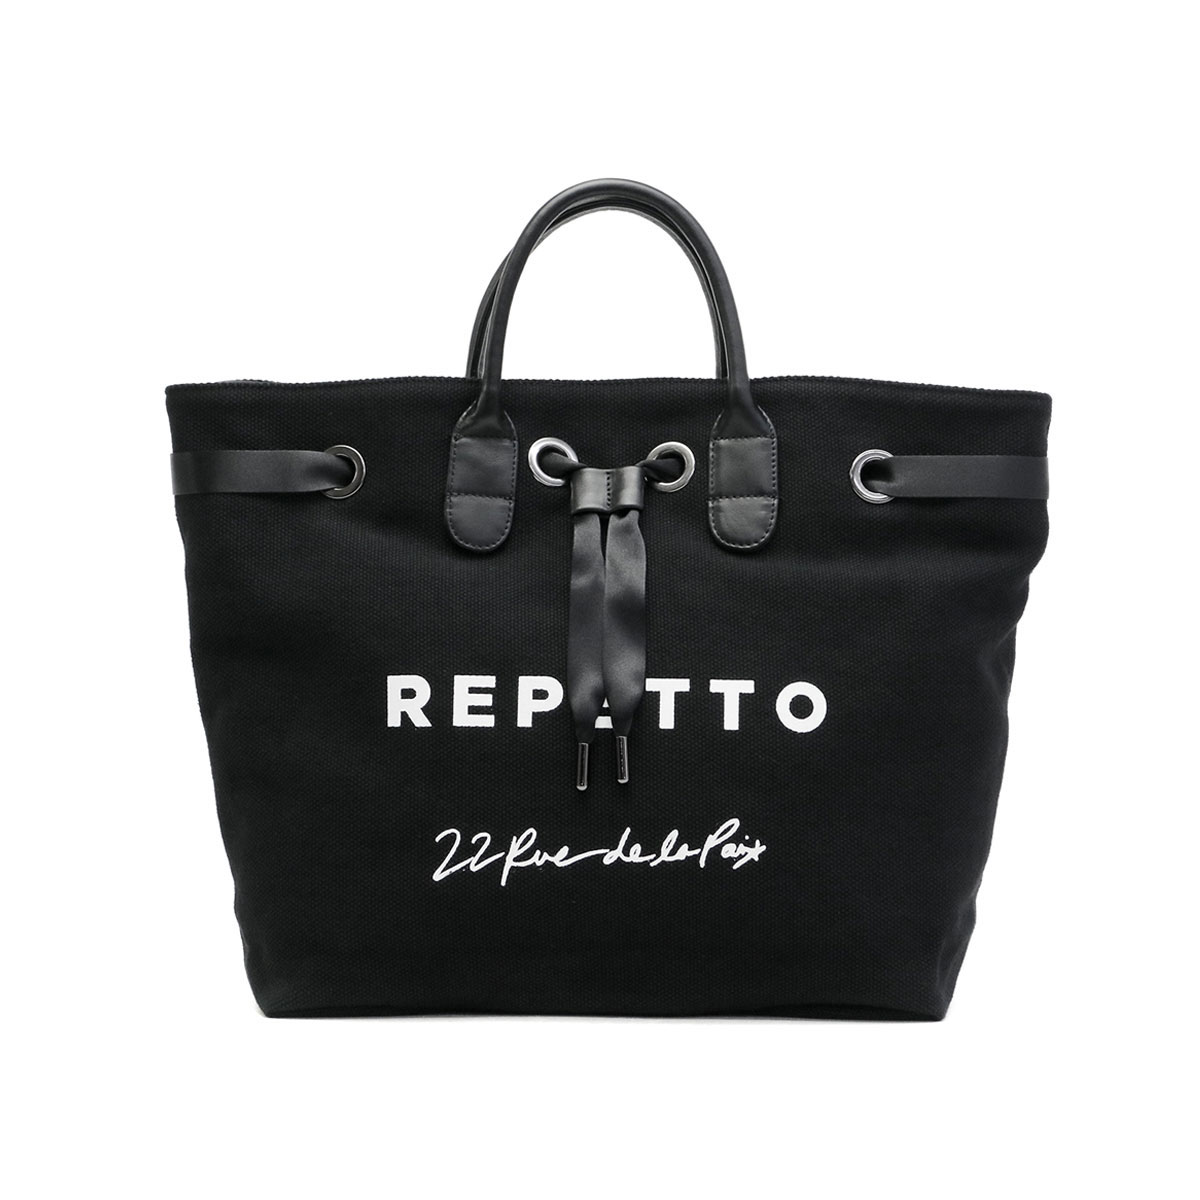 レペット  Lepetto  トートバッグ  パリで購入 未使用